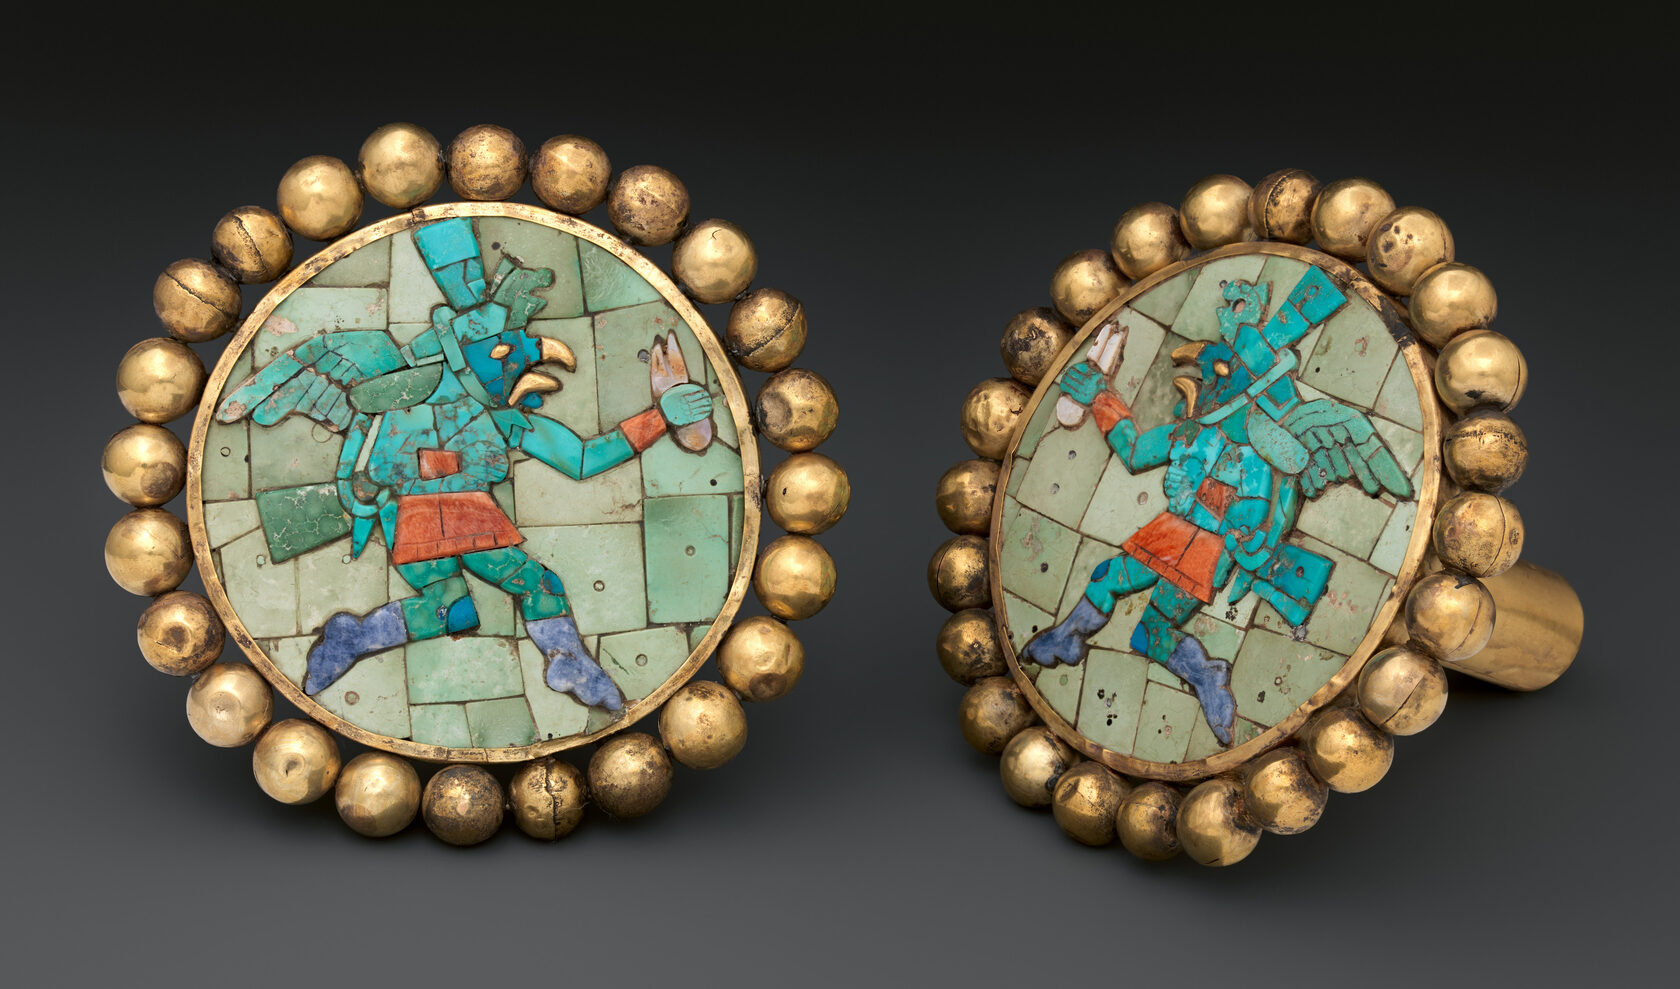 Ушные украшения с крылатыми бегунами. Моче, Перу, 400 - 700 гг. н.э. Коллекция The Metropolitan Museum of Art.